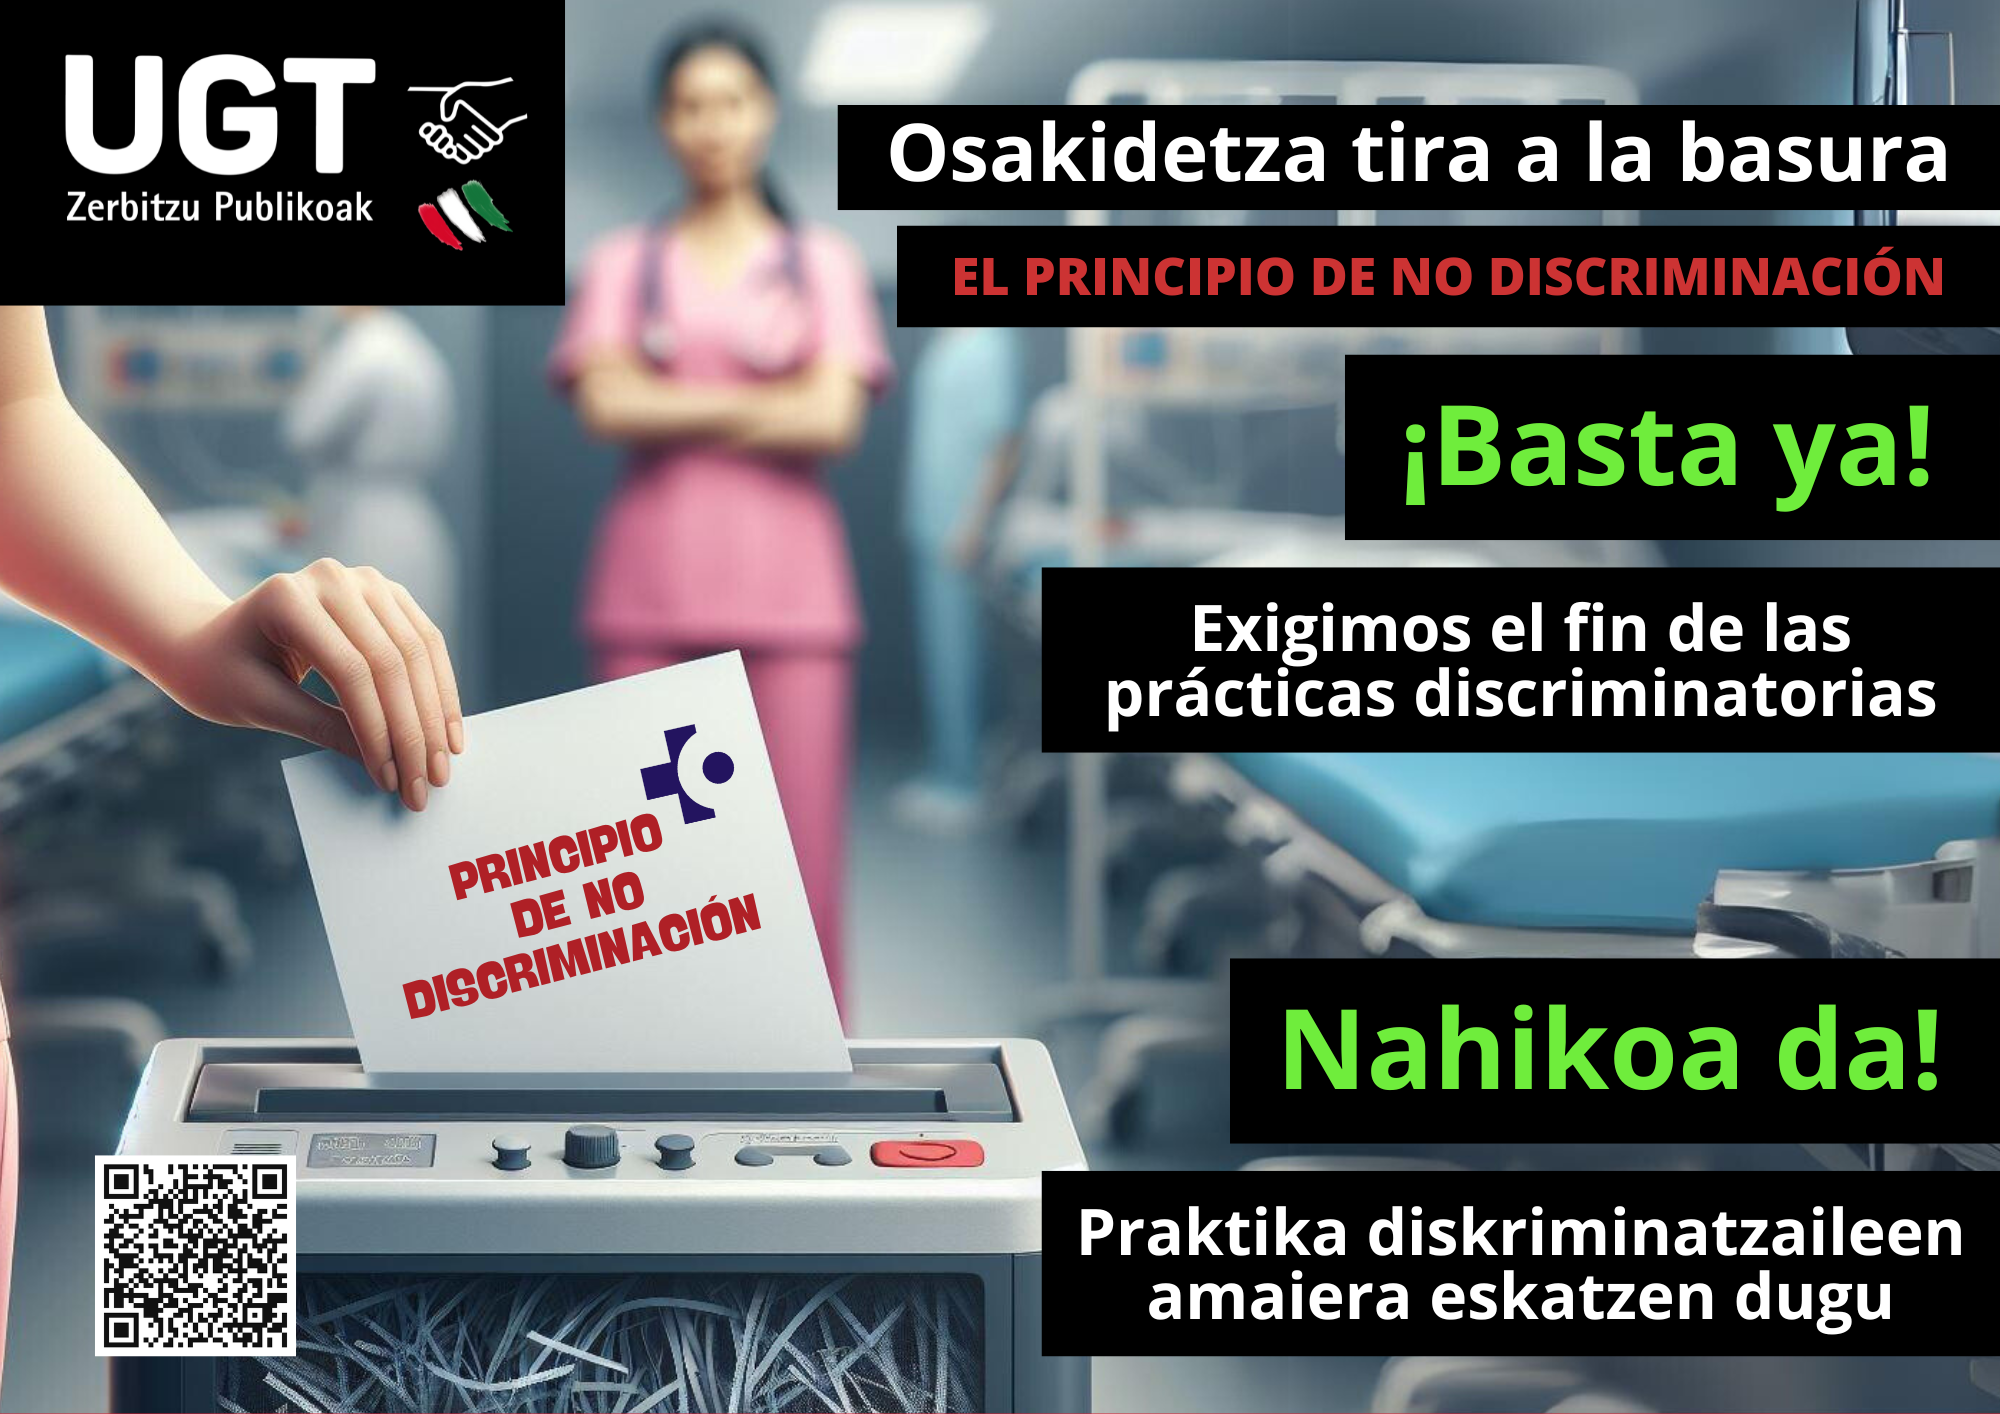 Osakidetza no respeta el principio de NO discriminación. ¡Basta ya! Exigimos el fin de las prácticas discriminatorias.